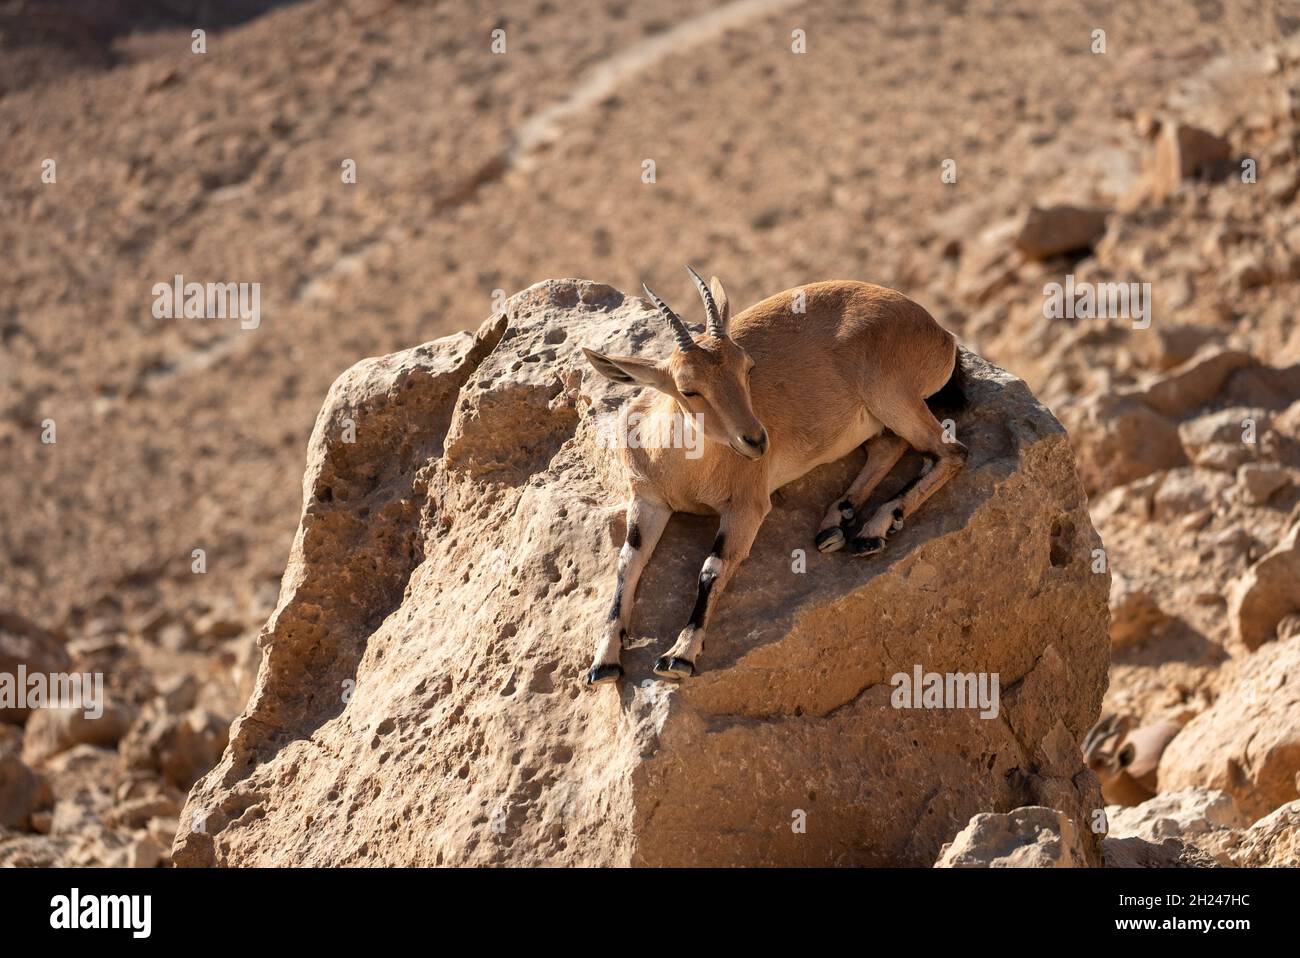 Femme Nubian Ibex (Capra ibex nubiana AKA Capra nubiana) s'occupant de sa jeune photographiée en Israël, désert de Negev en octobre Banque D'Images